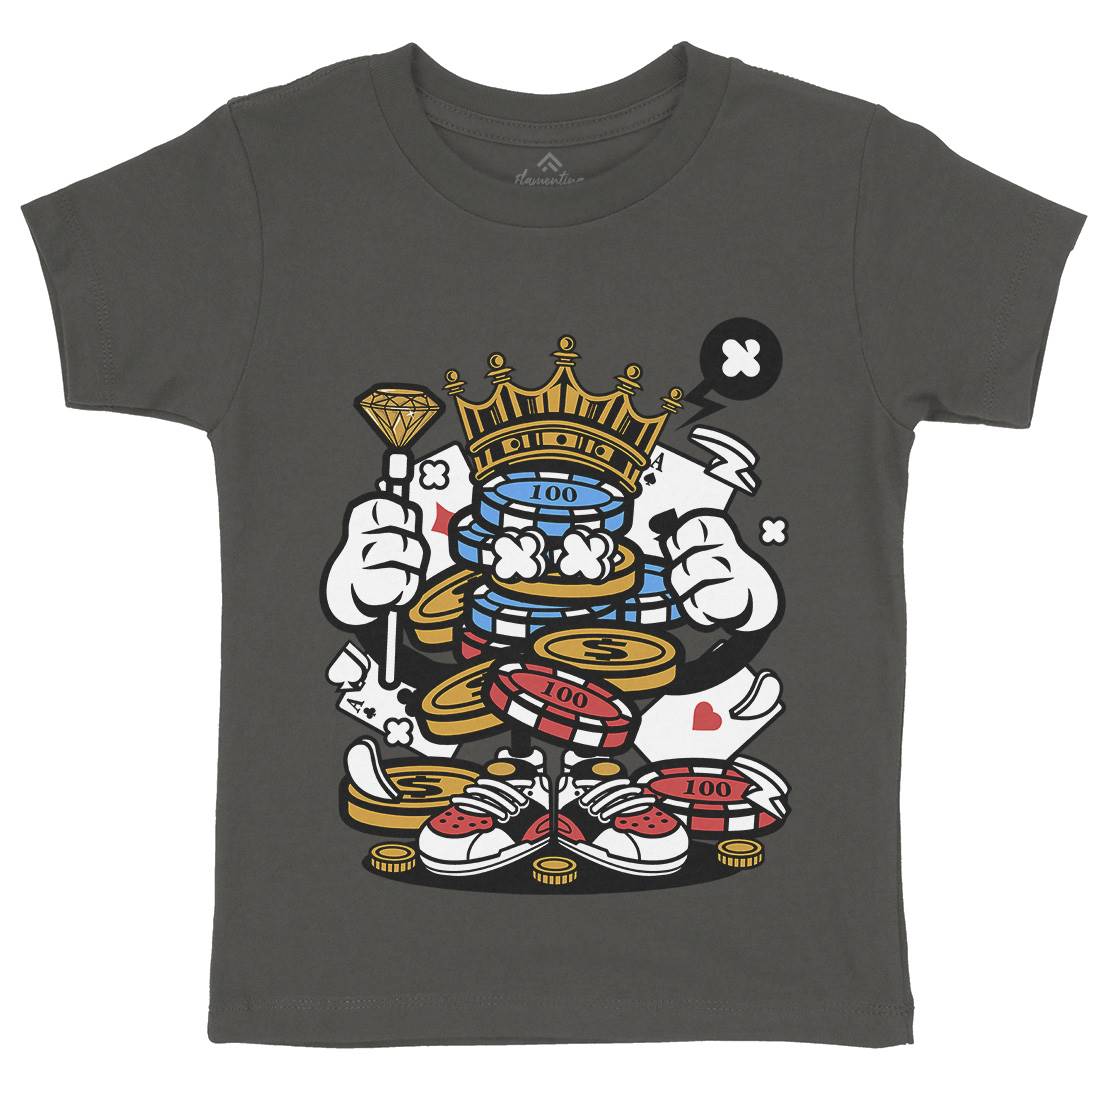 King Of Gambler Kids Crew Neck T-Shirt Retro C159